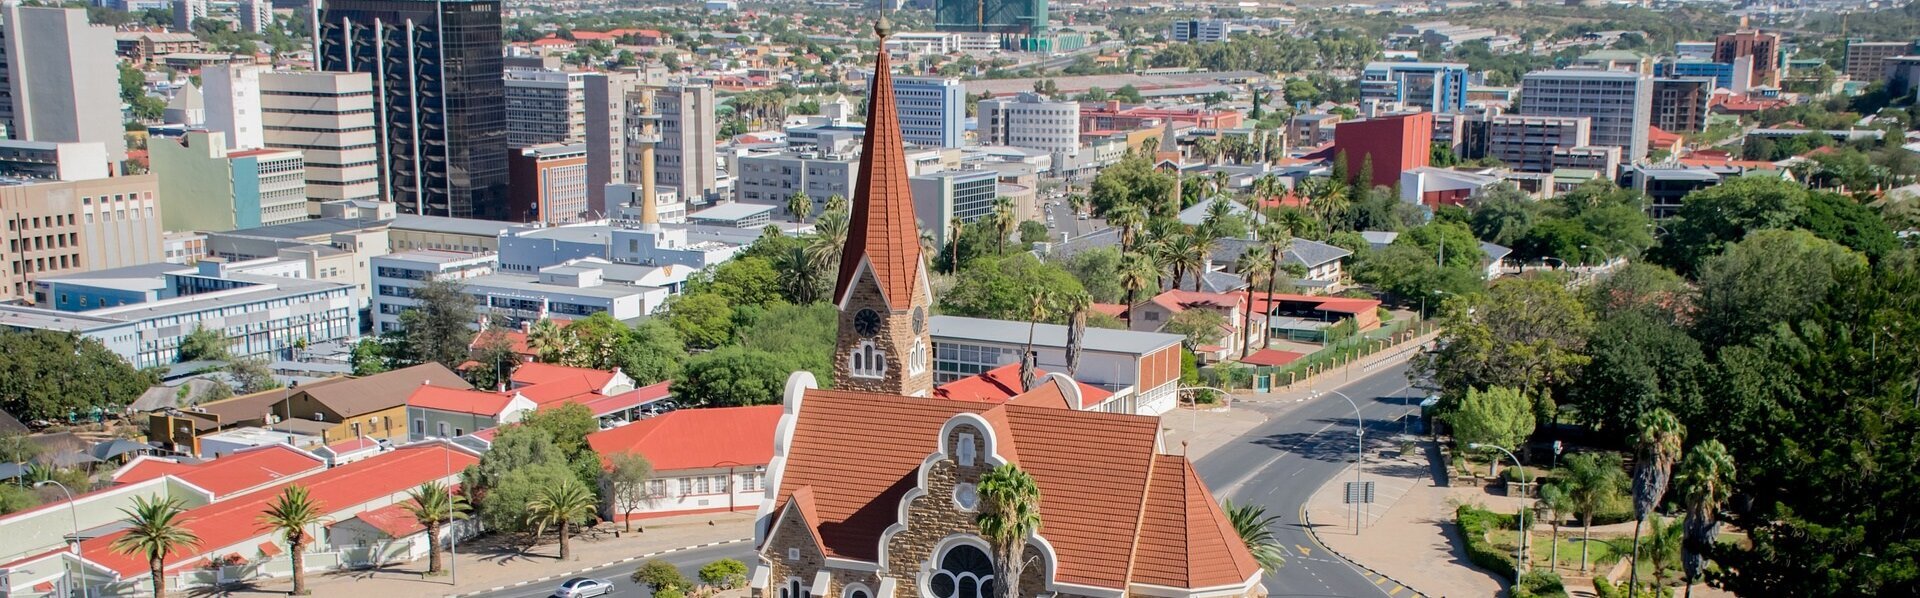 Das Bild zeigt ein Stadtansicht von Windhoek in Namibia.